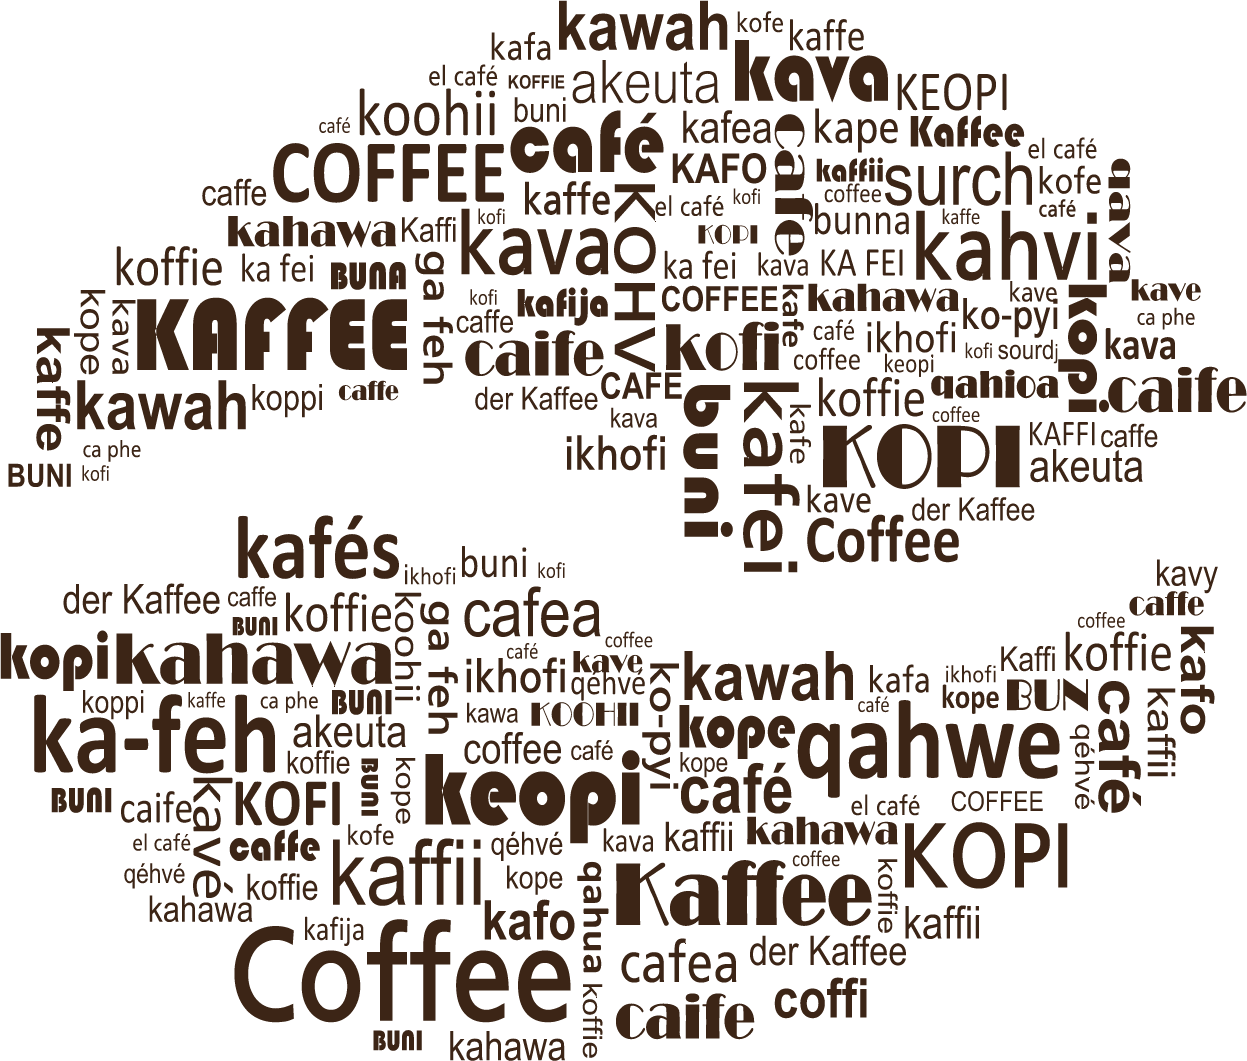 Y el origen de la palabra Café? 